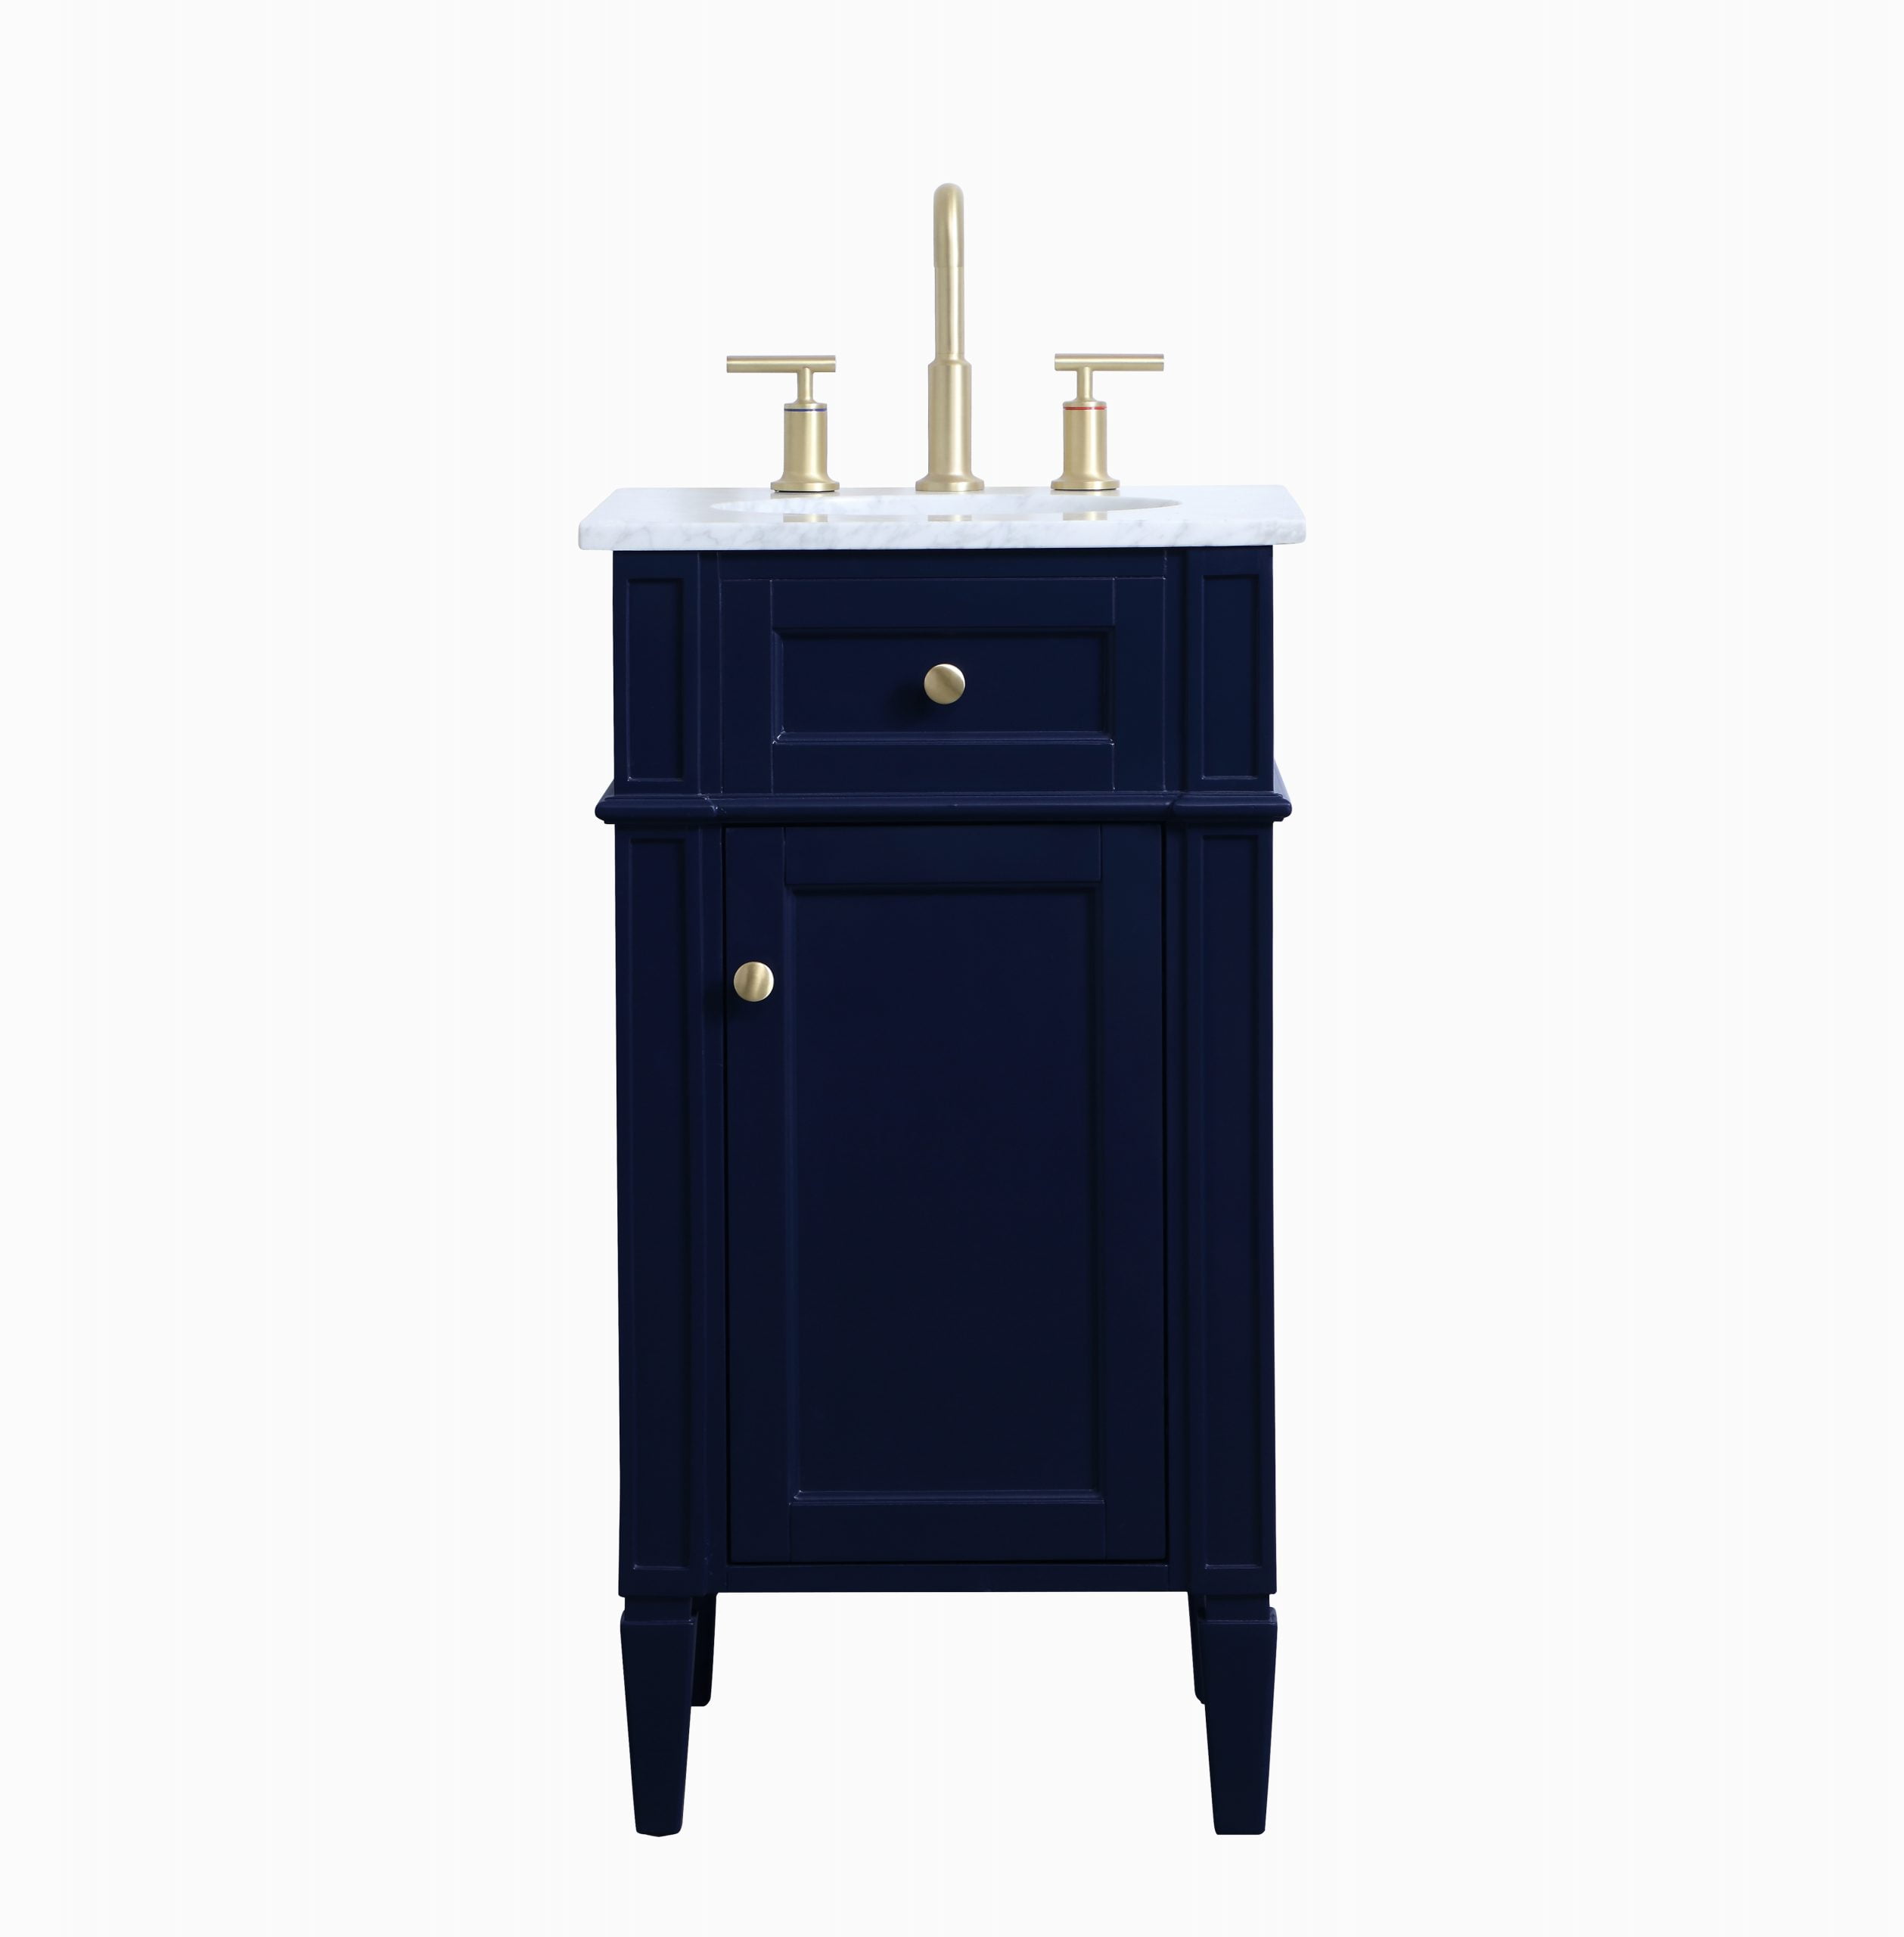 18 Inch Single Bathroom Vanity In Blue, 18 Inch Light Blue Bathroom Vanity